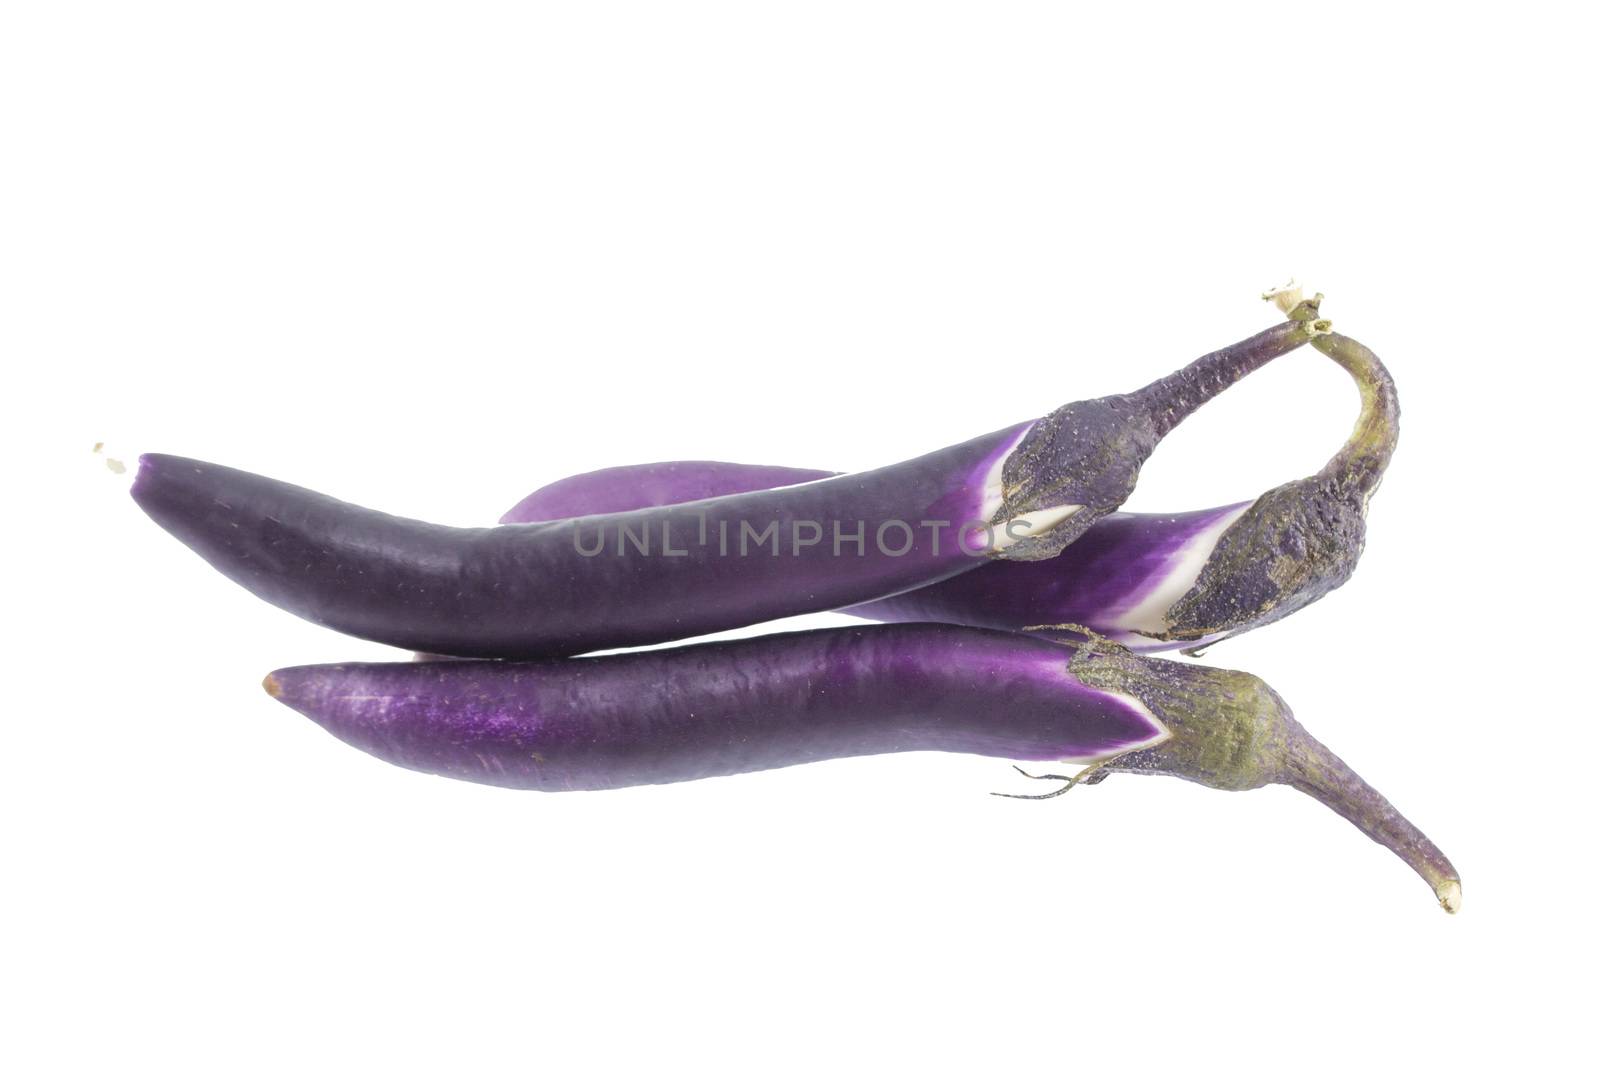 Eggplant by designsstock